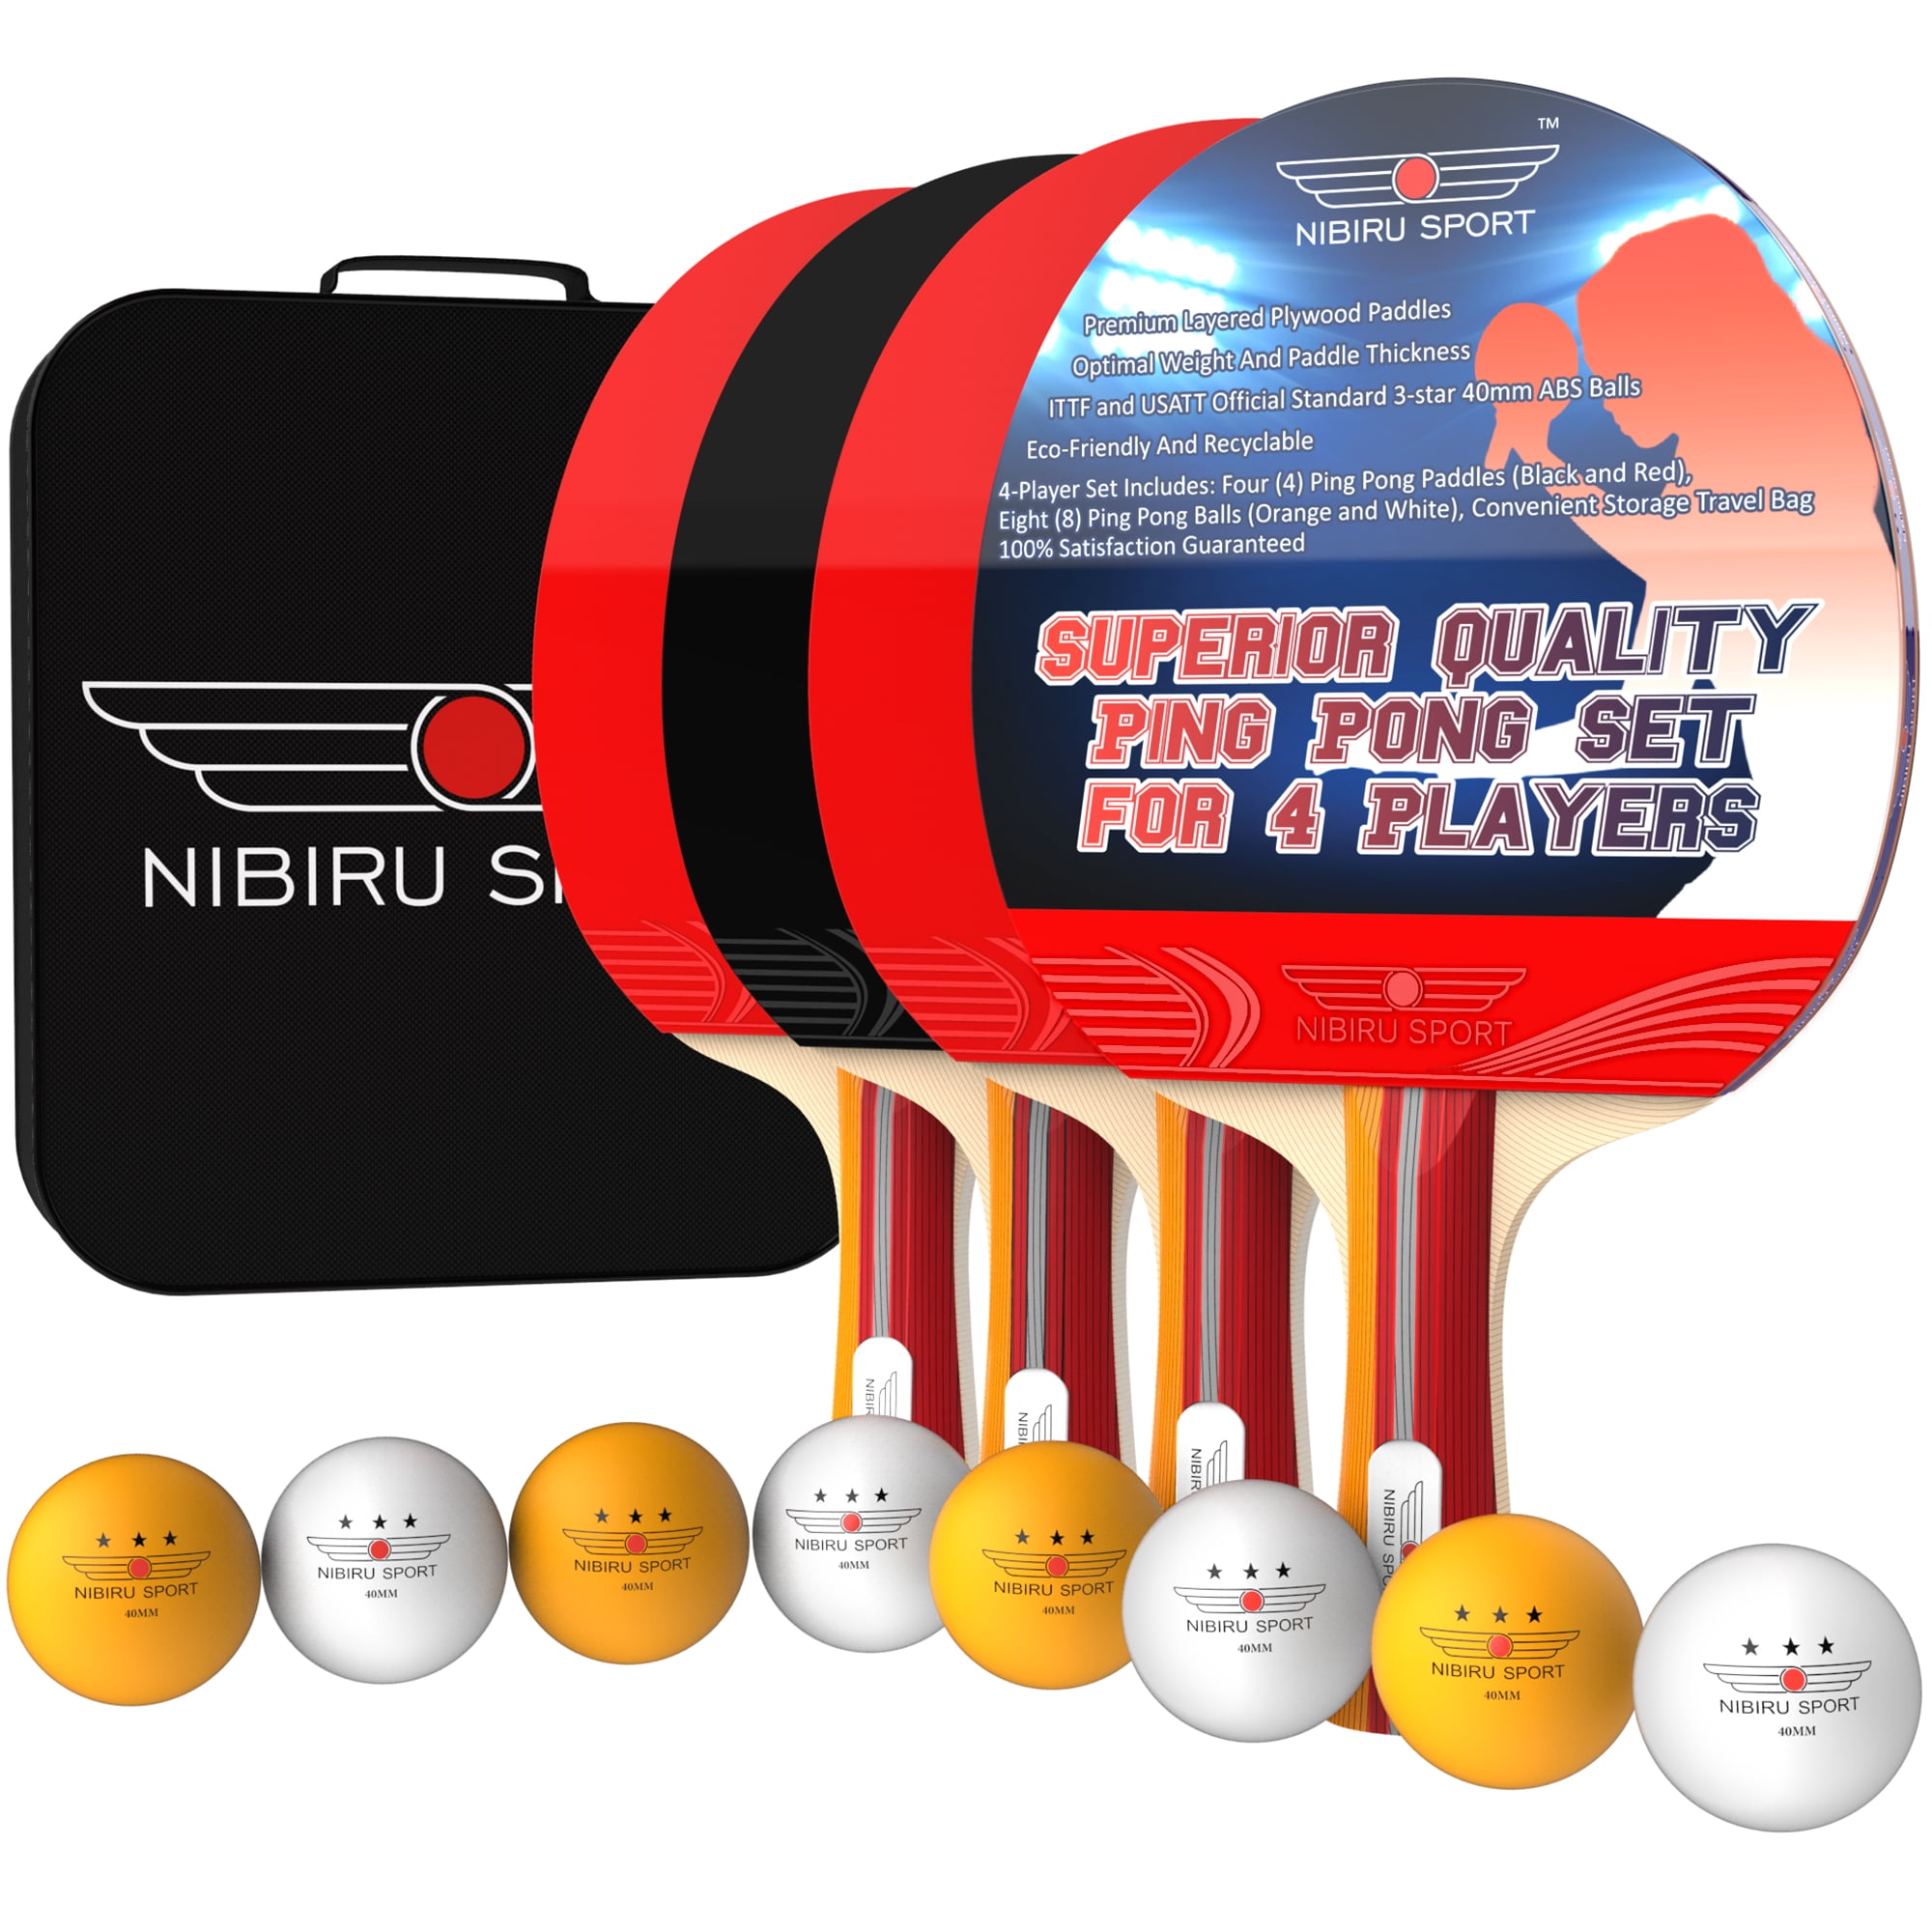 NIBIRU SPORT Ping Pong Paddle Set, 4 Paddles, 8 Tennis Balls, Storage Bag - Walmart.com